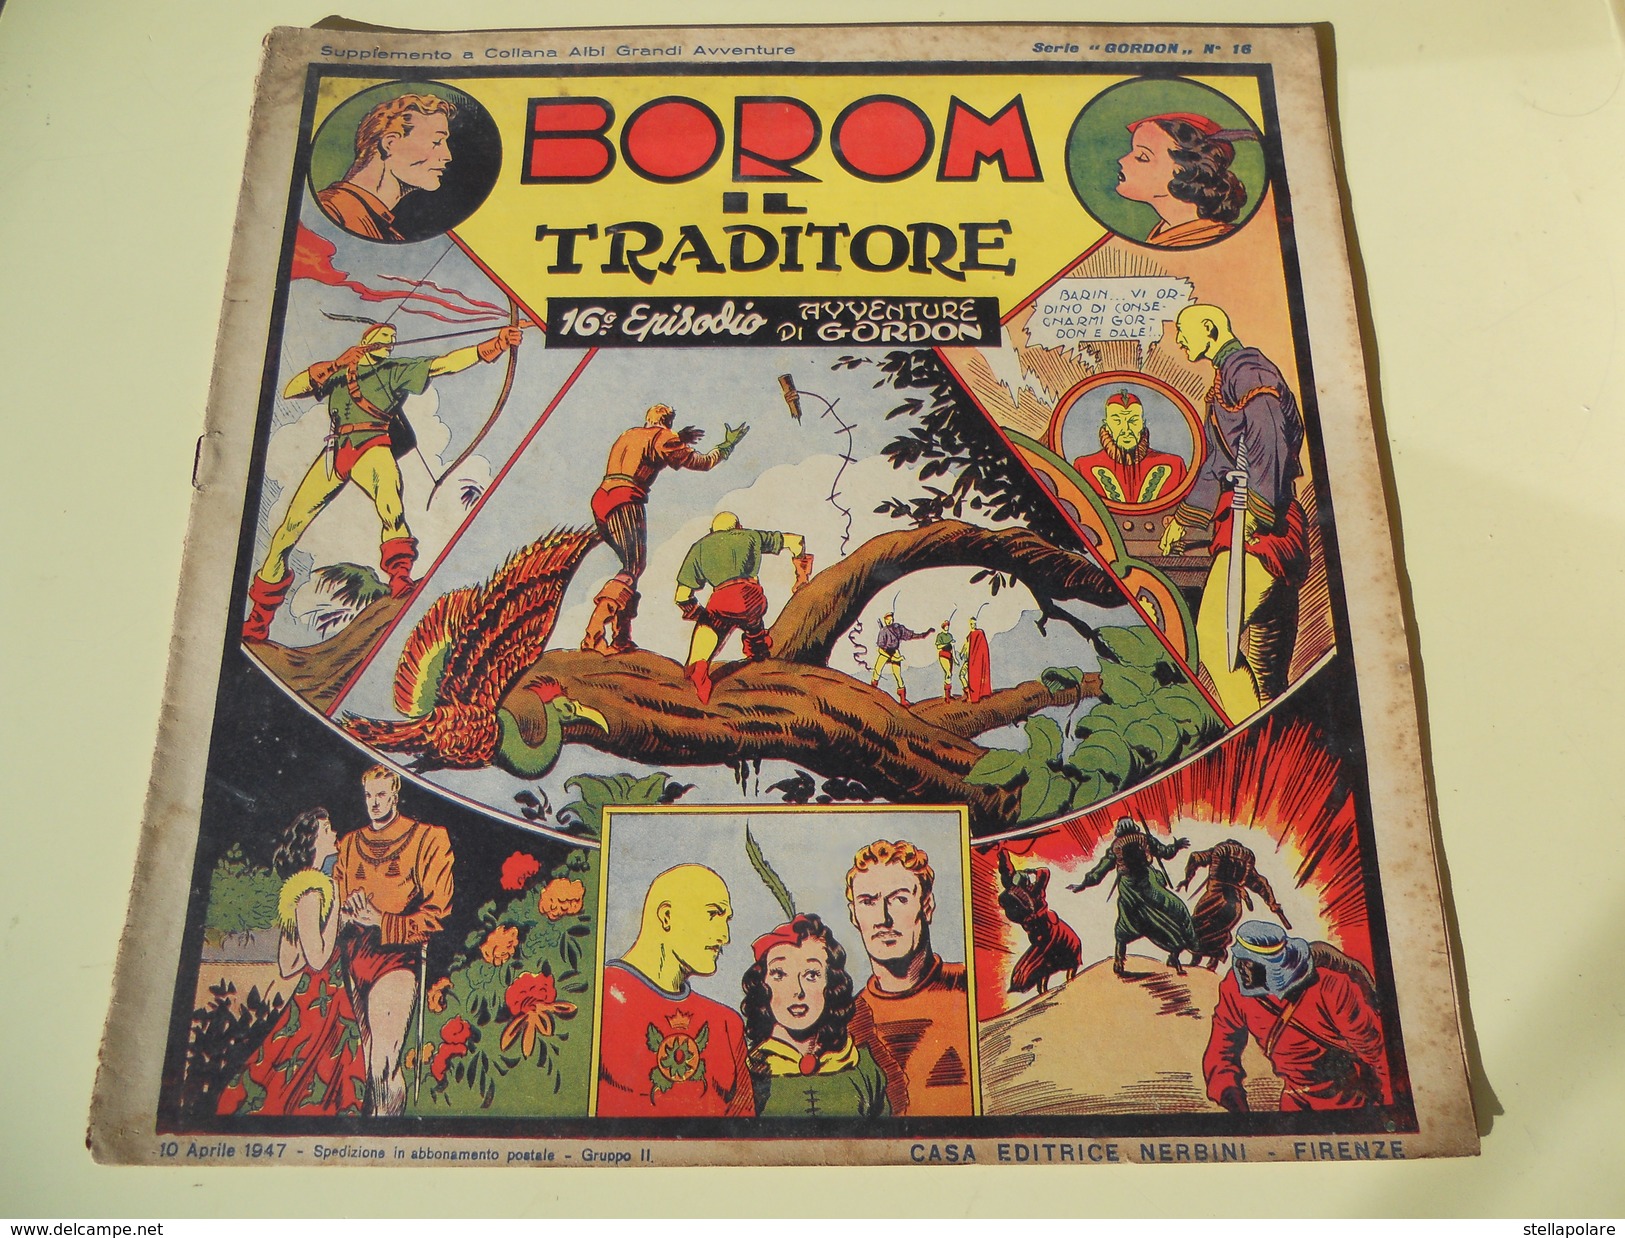 NERBINI - GRANDI AVVENTURE - SERIE GORDON N. 16 - BOROM IL TRADITORE - 1947 - Classici 1930/50